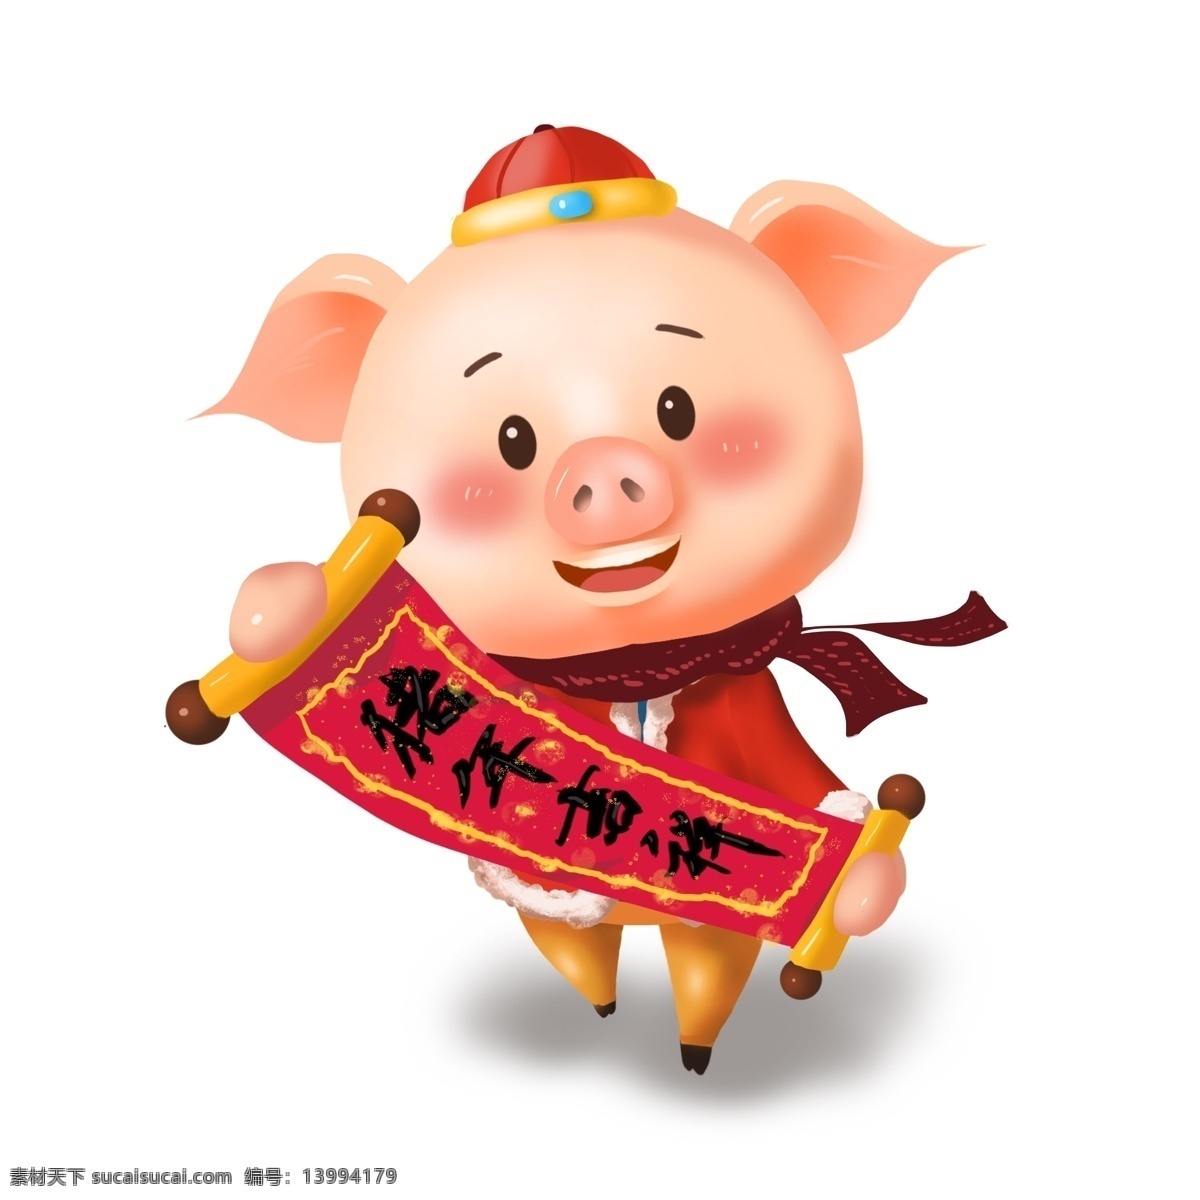 商用 高清 立体 猪年 形象 吉祥物 对联 卷轴 可商用 猪年ip